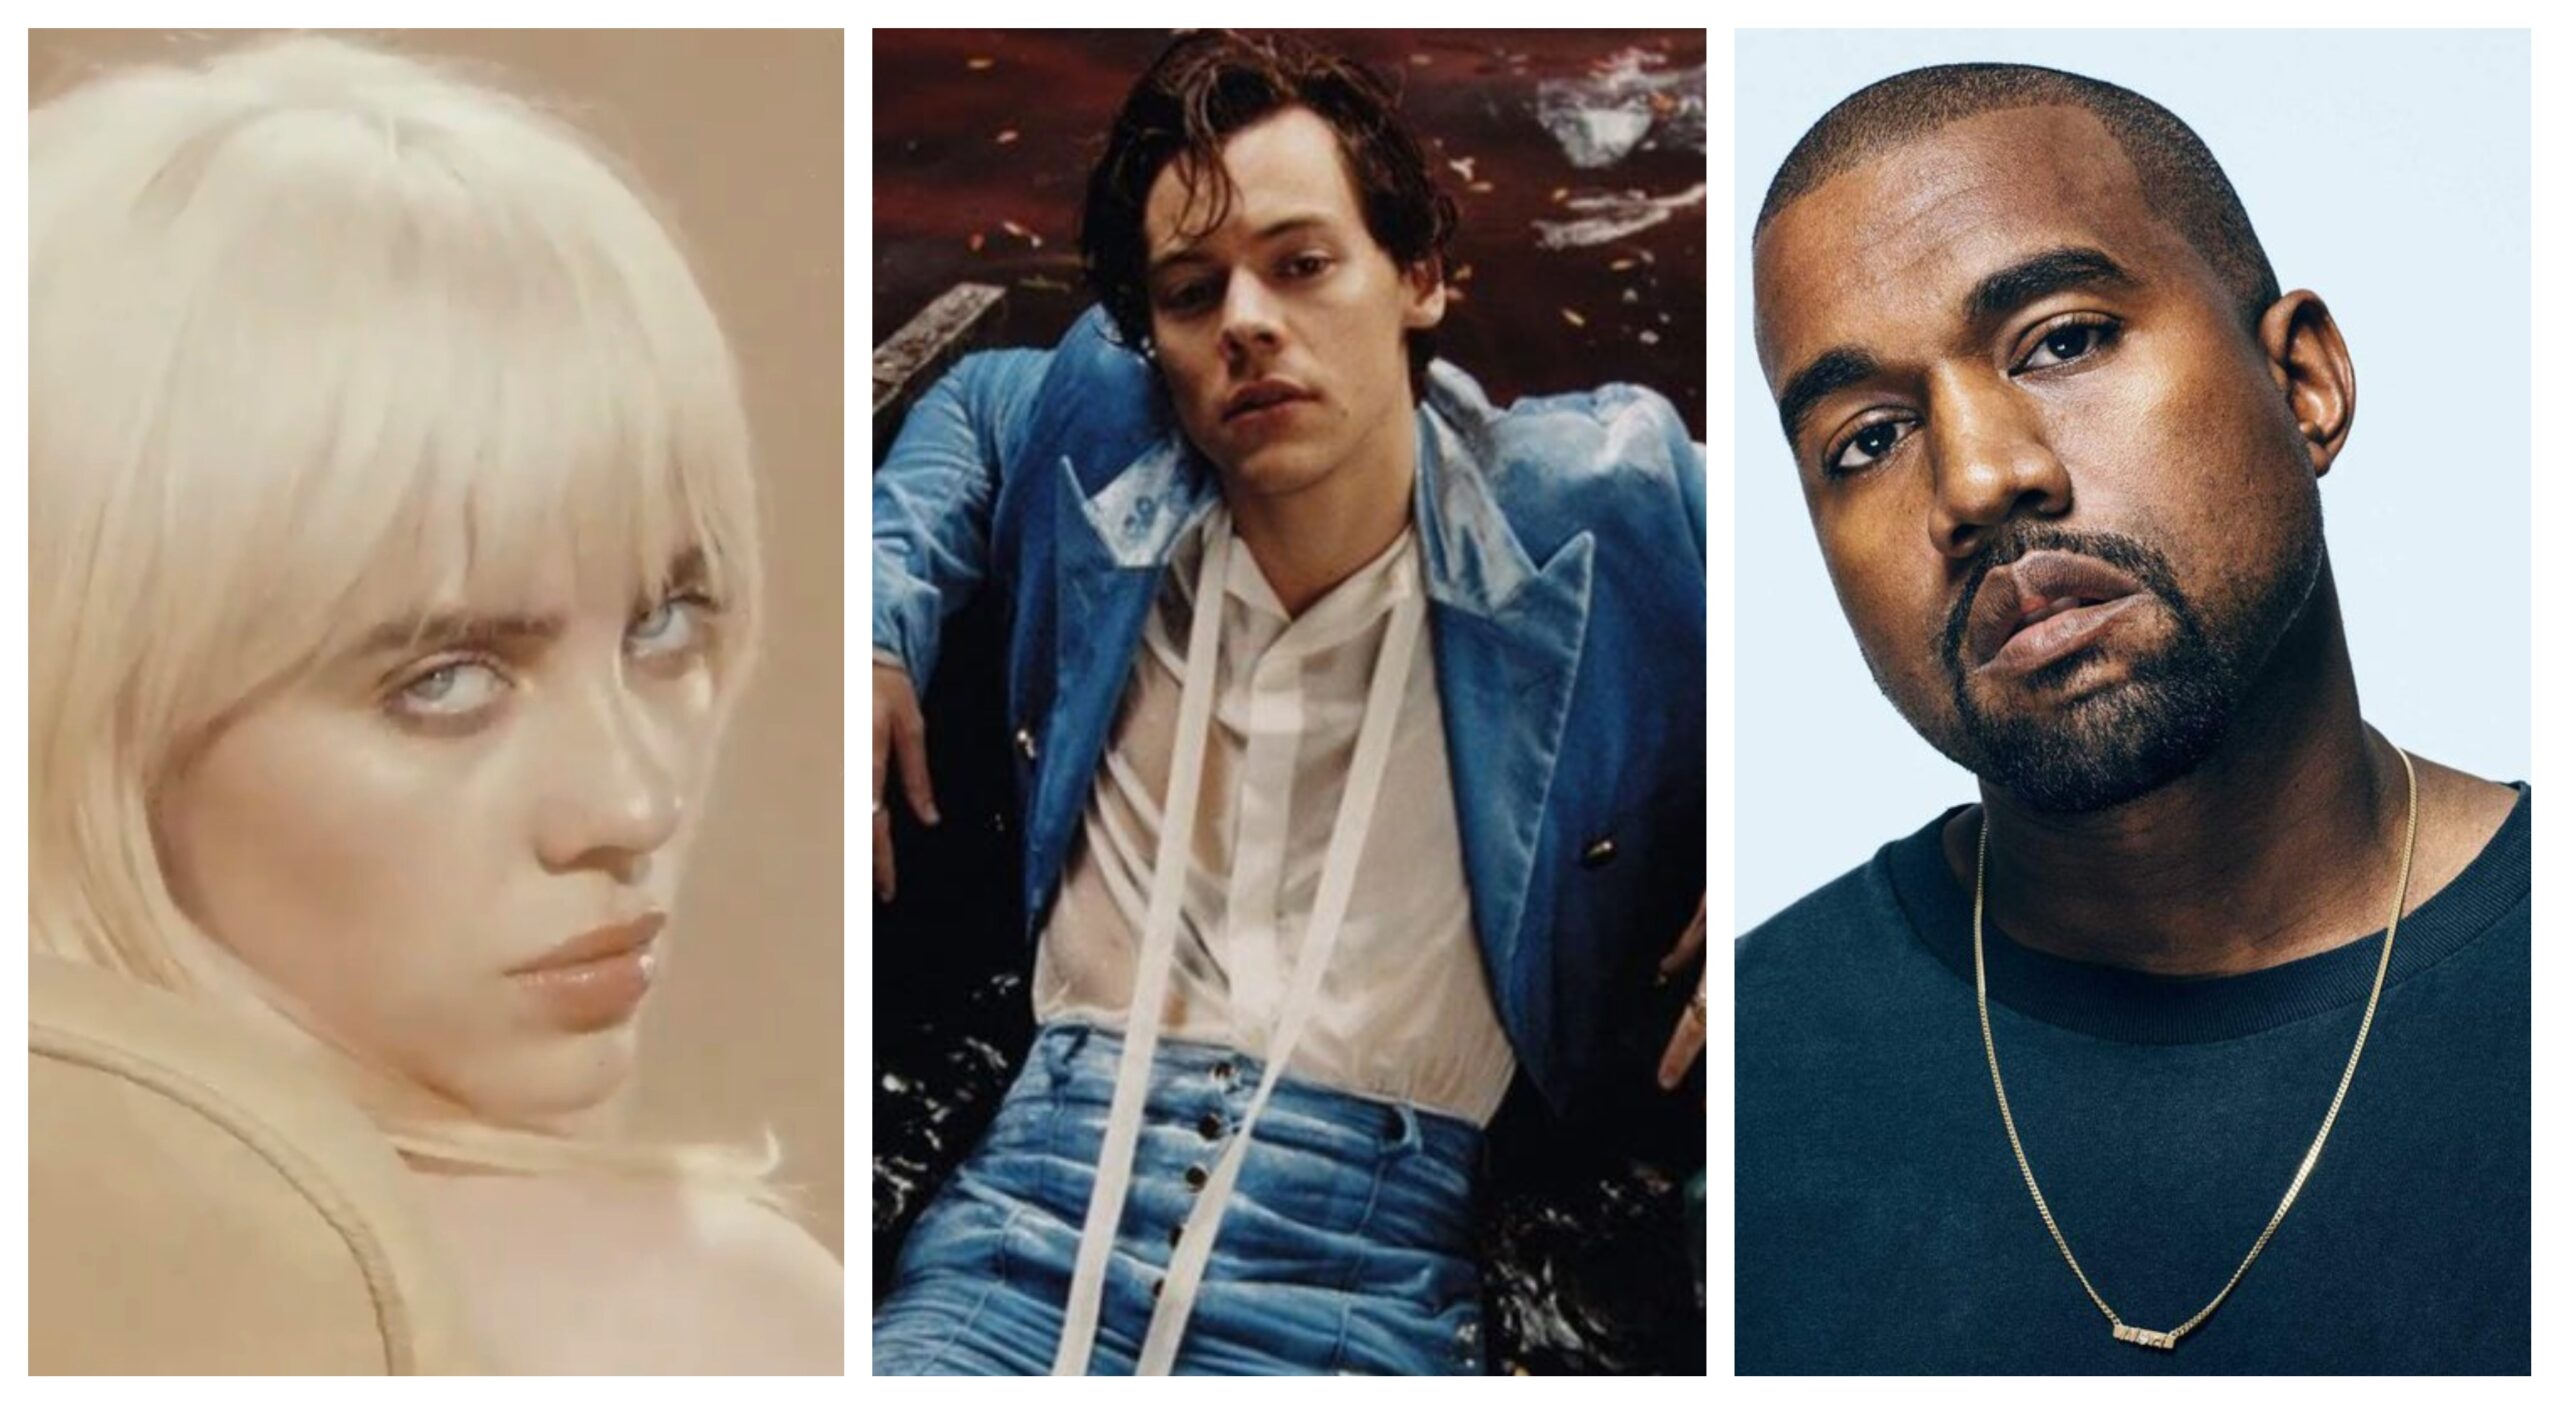 Coachella 2022: Harry Styles, Kanye West, & Billie Eilish Set to ...